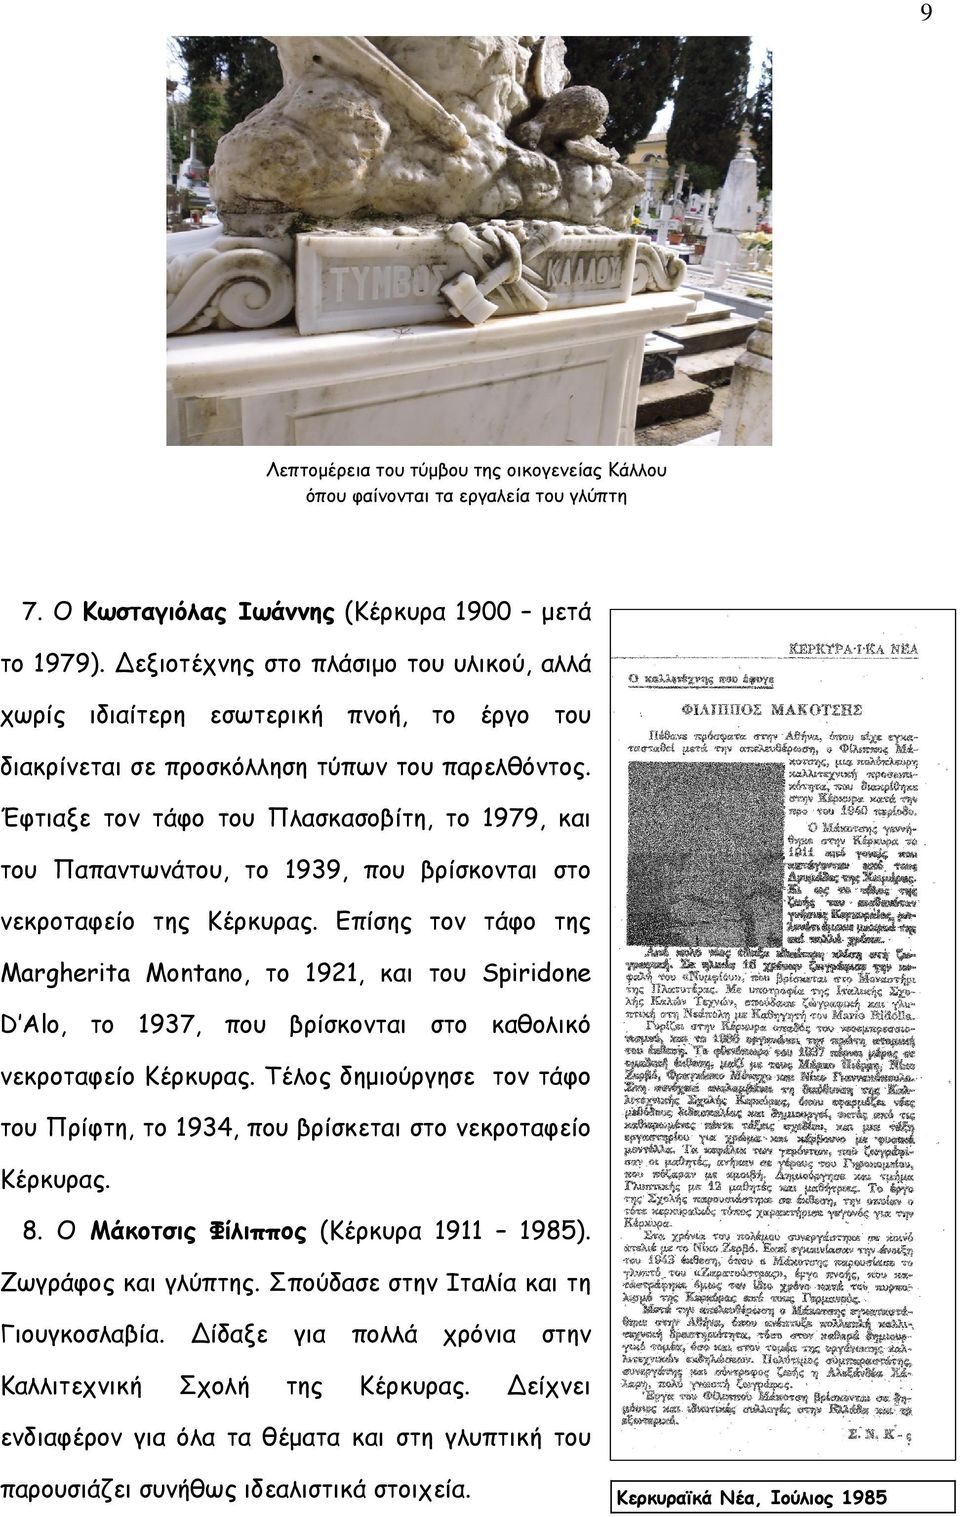 Έφτιαξε τον τάφο του Πλασκασοβίτη, το 1979, και του Παπαντωνάτου, το 1939, που βρίσκονται στο νεκροταφείο της Κέρκυρας.